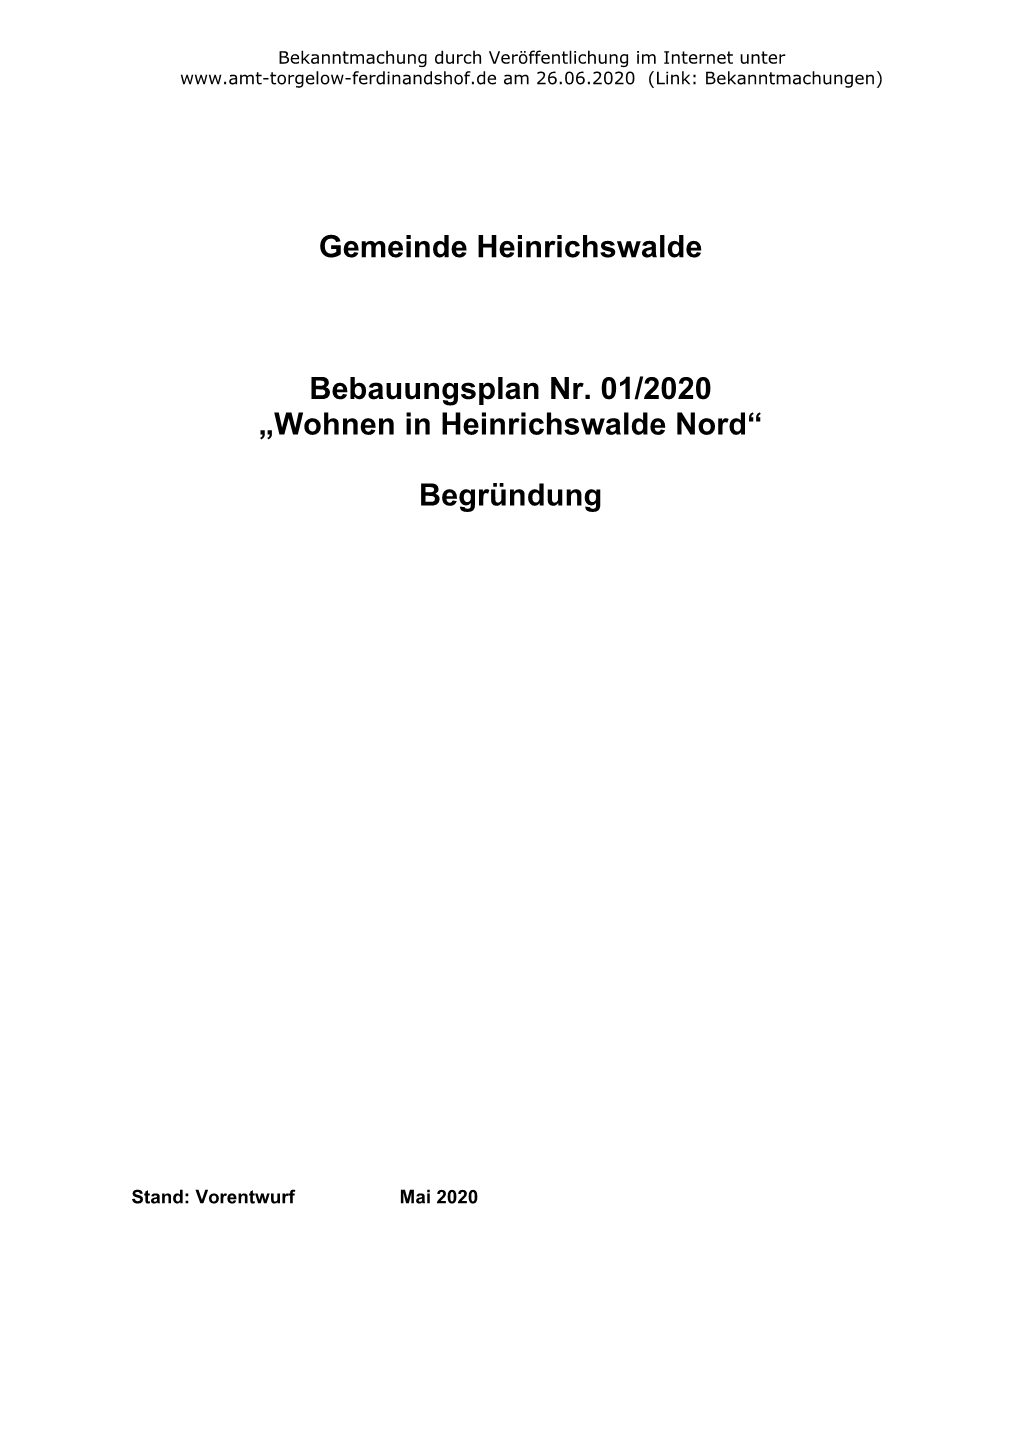 Gemeinde Heinrichswalde Bebauungsplan Nr. 01/2020